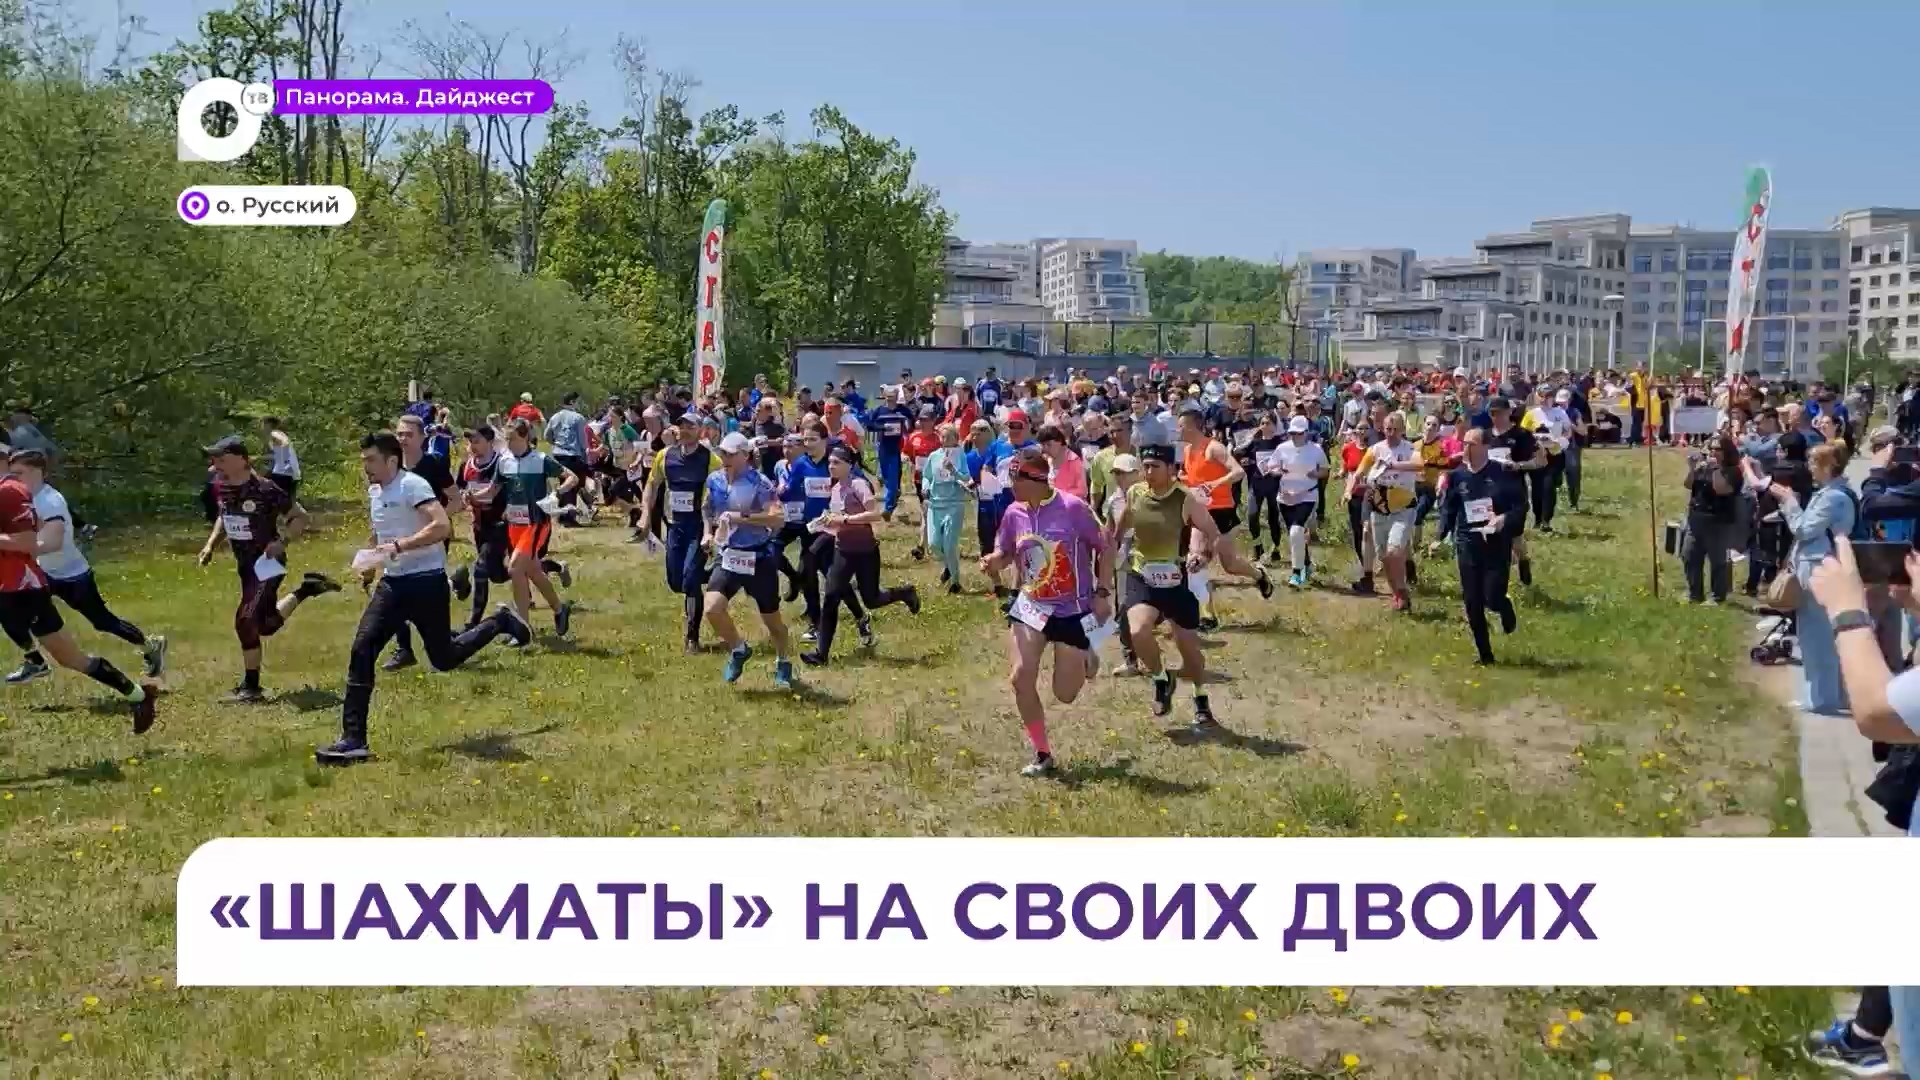 Соревнования по спортивному ориентированию собрали около 800 участников на Русском острове